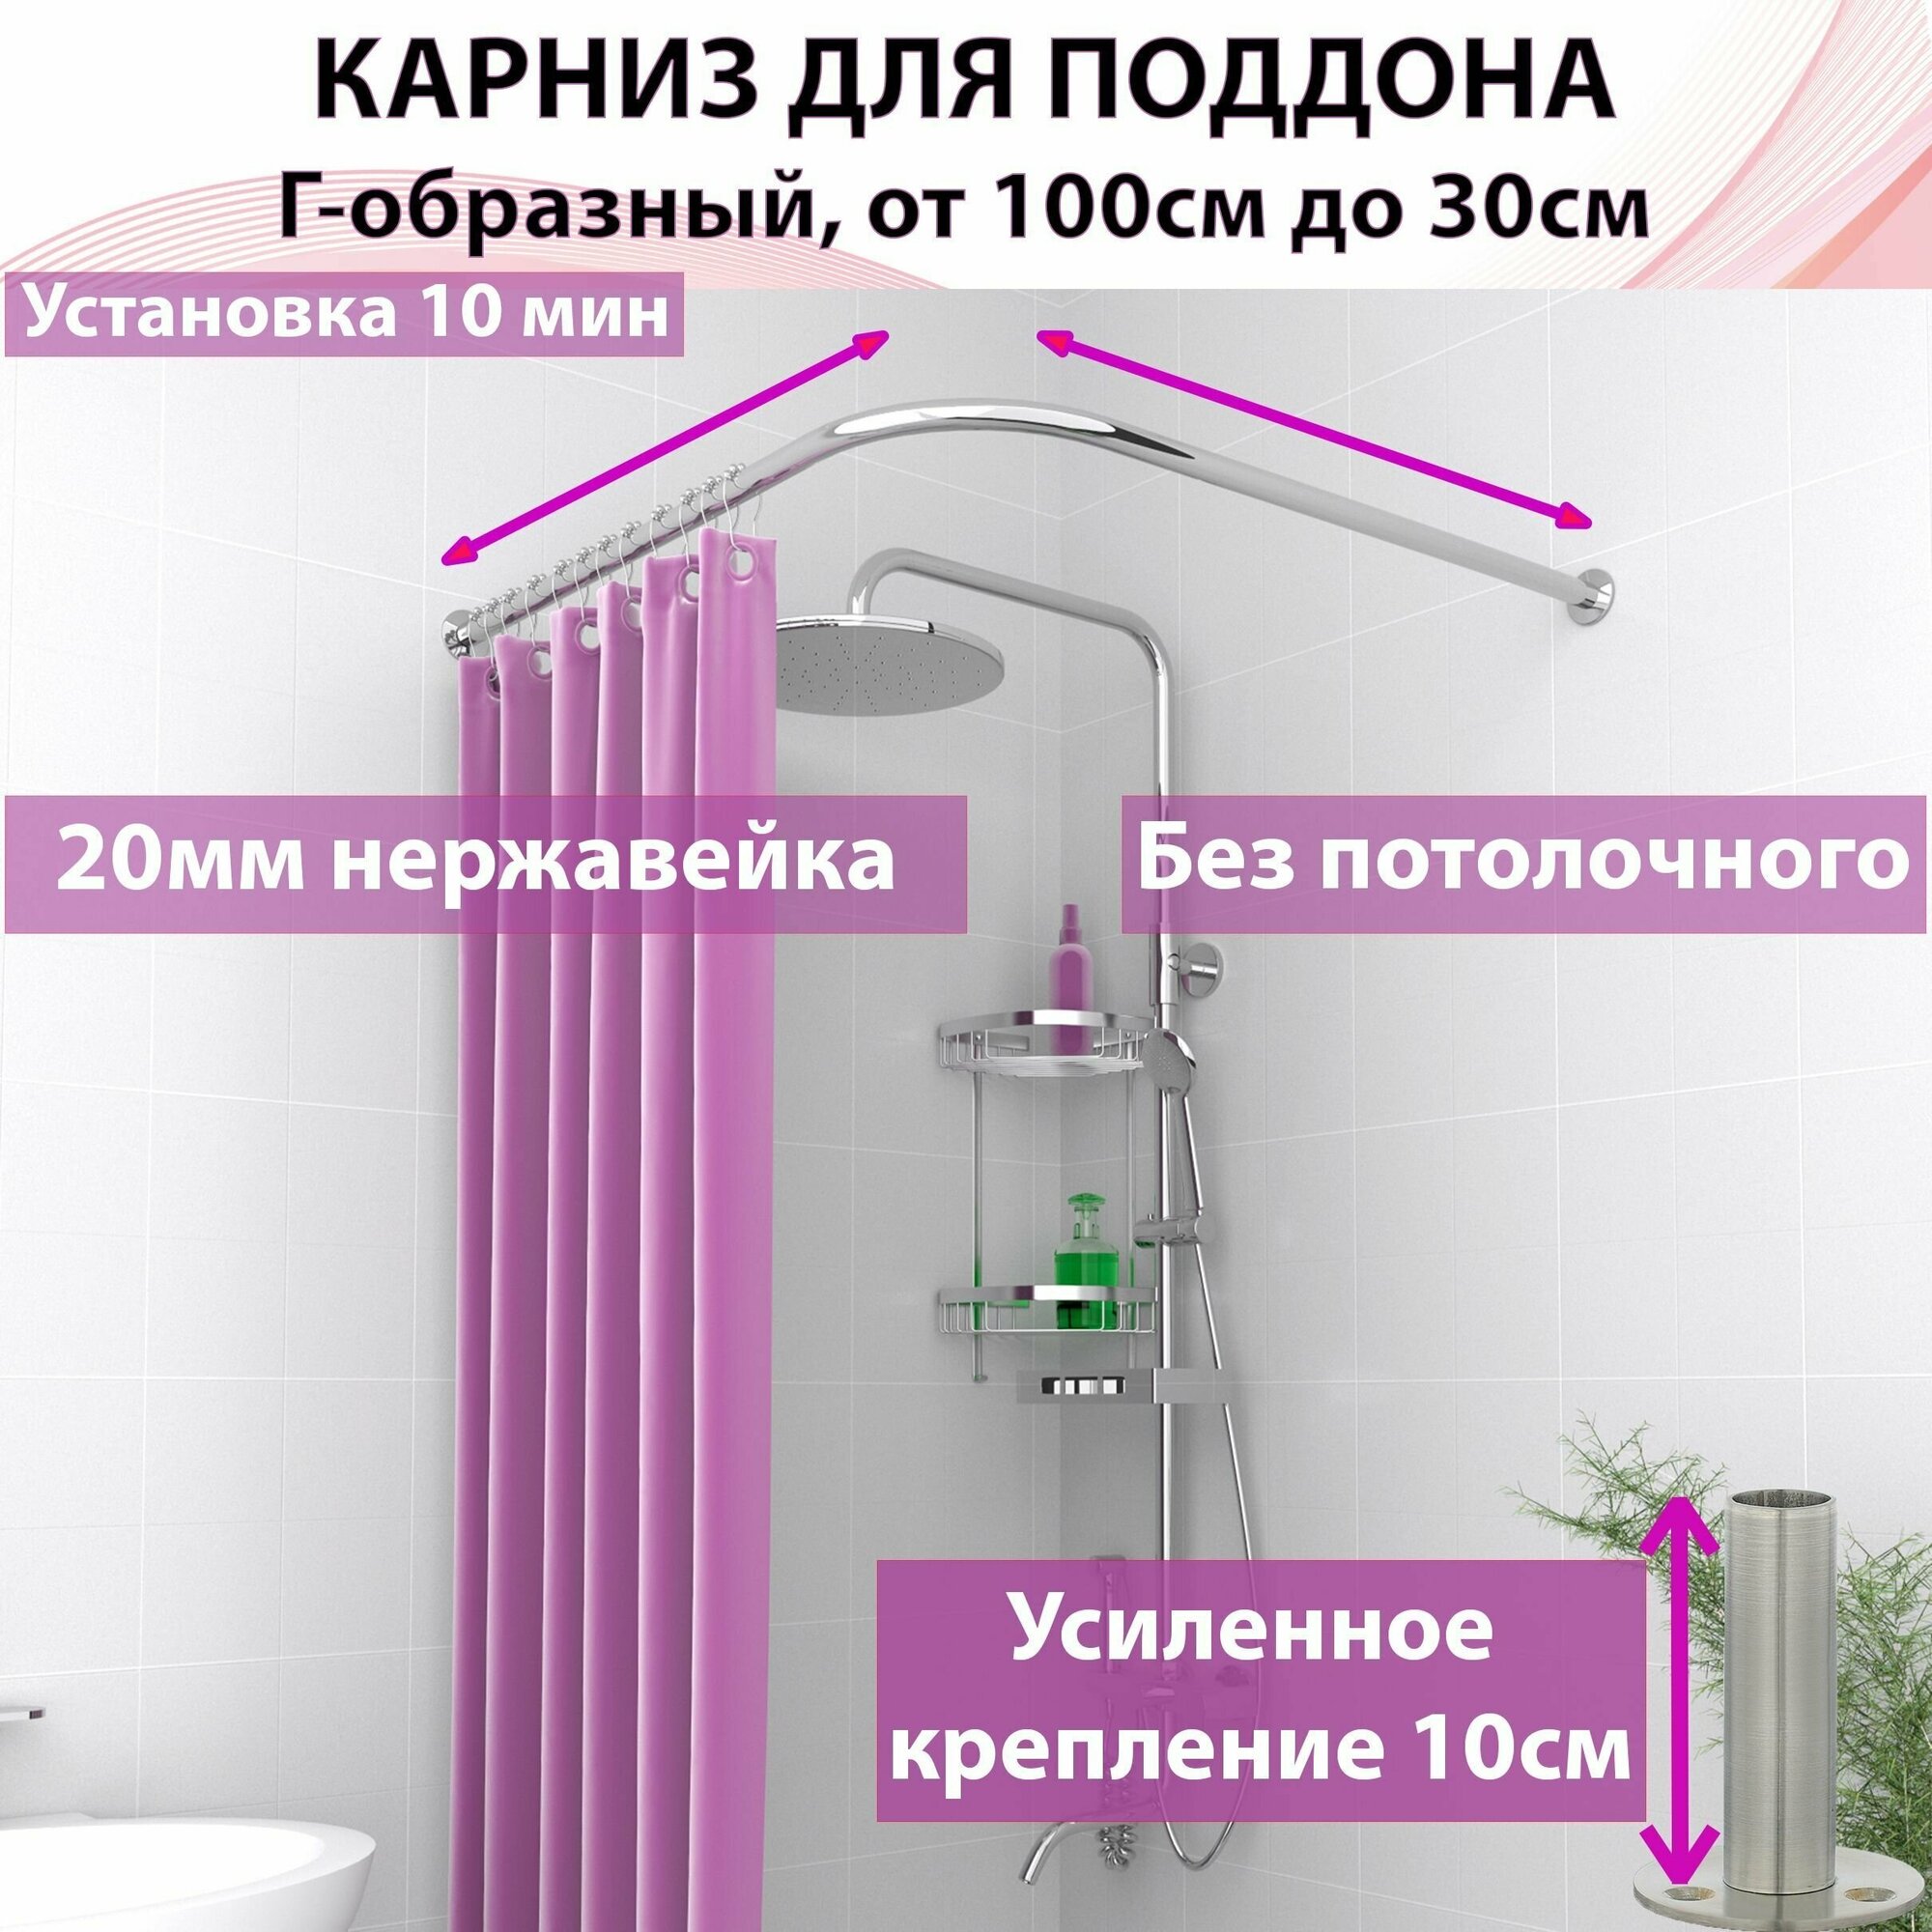 Карниз для поддона , душа, ванны "Усиленный составной" от 100 см до 40 см для любого Г-образного или углового поддона